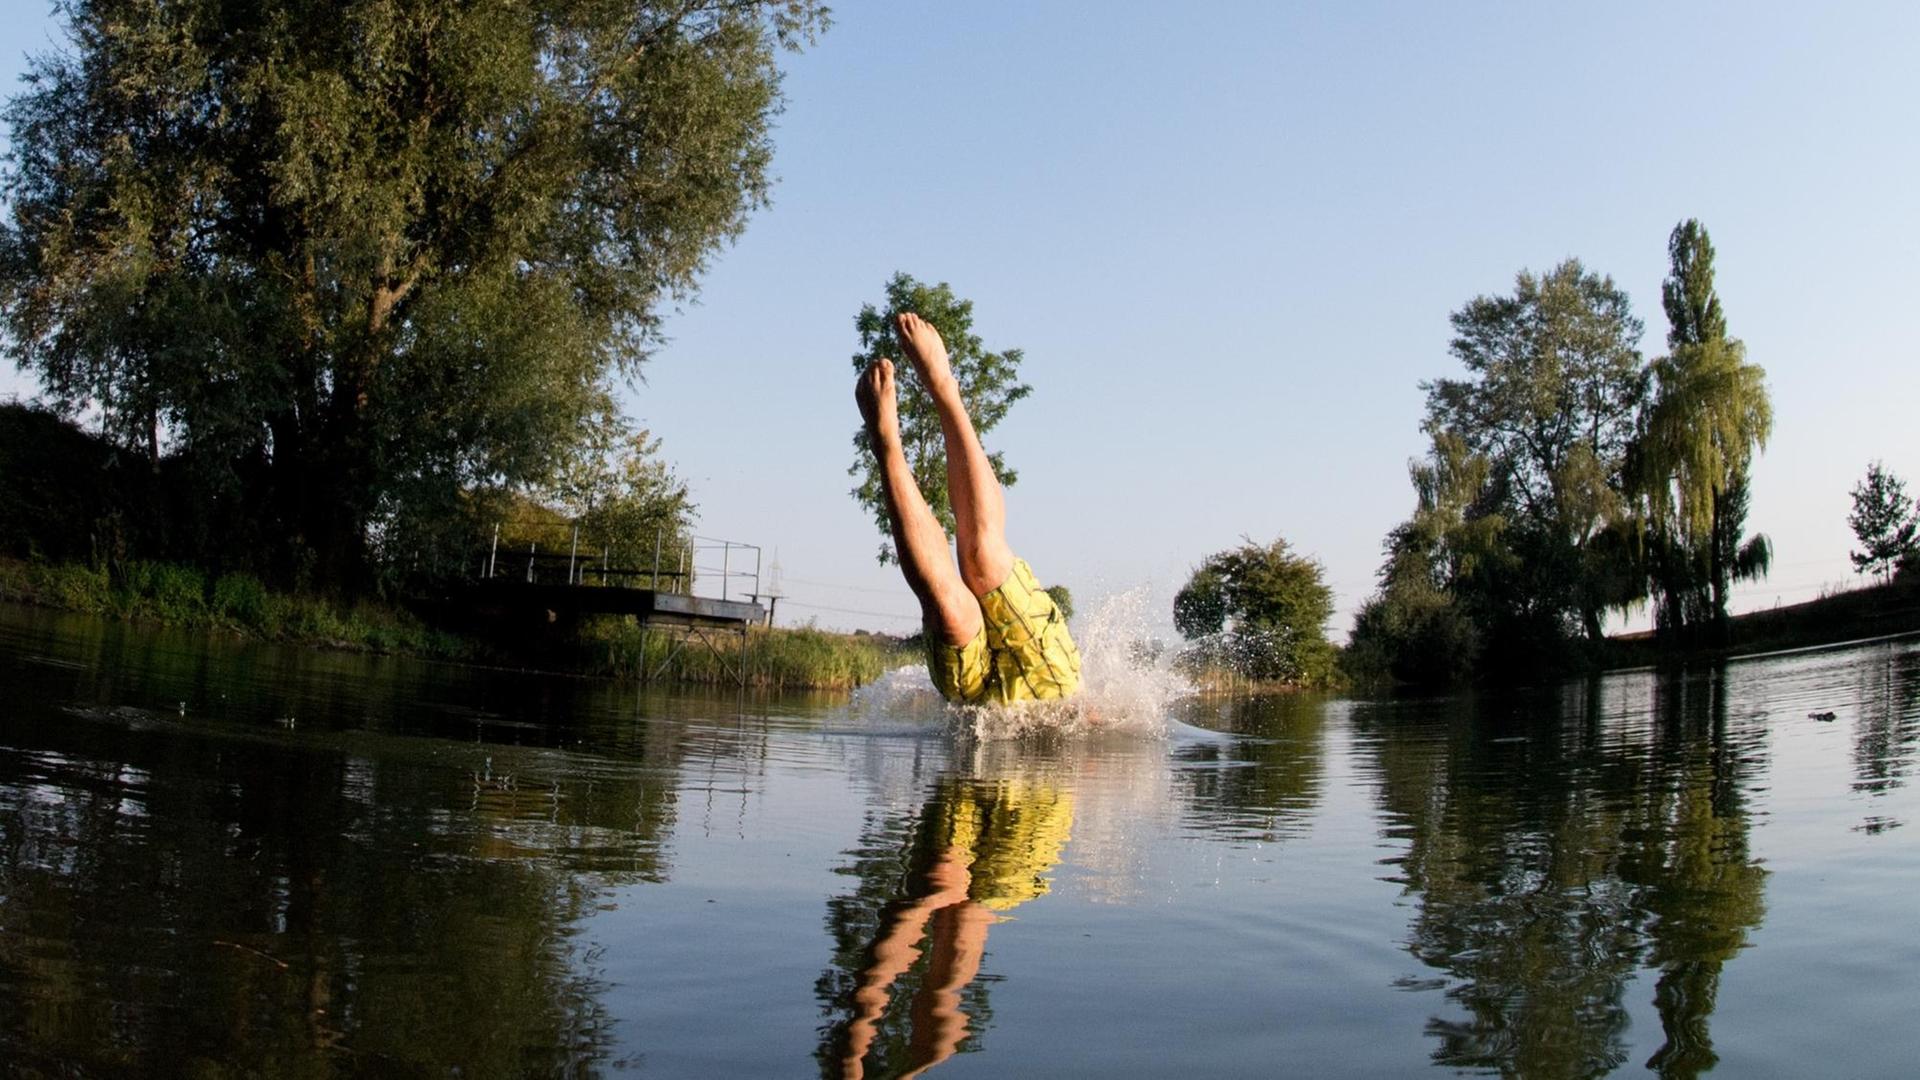 Ein junger Mann springt am 12.09.2016 in einen kleinen See bei Sehnde in der Region Hannover (Niedersachsen).